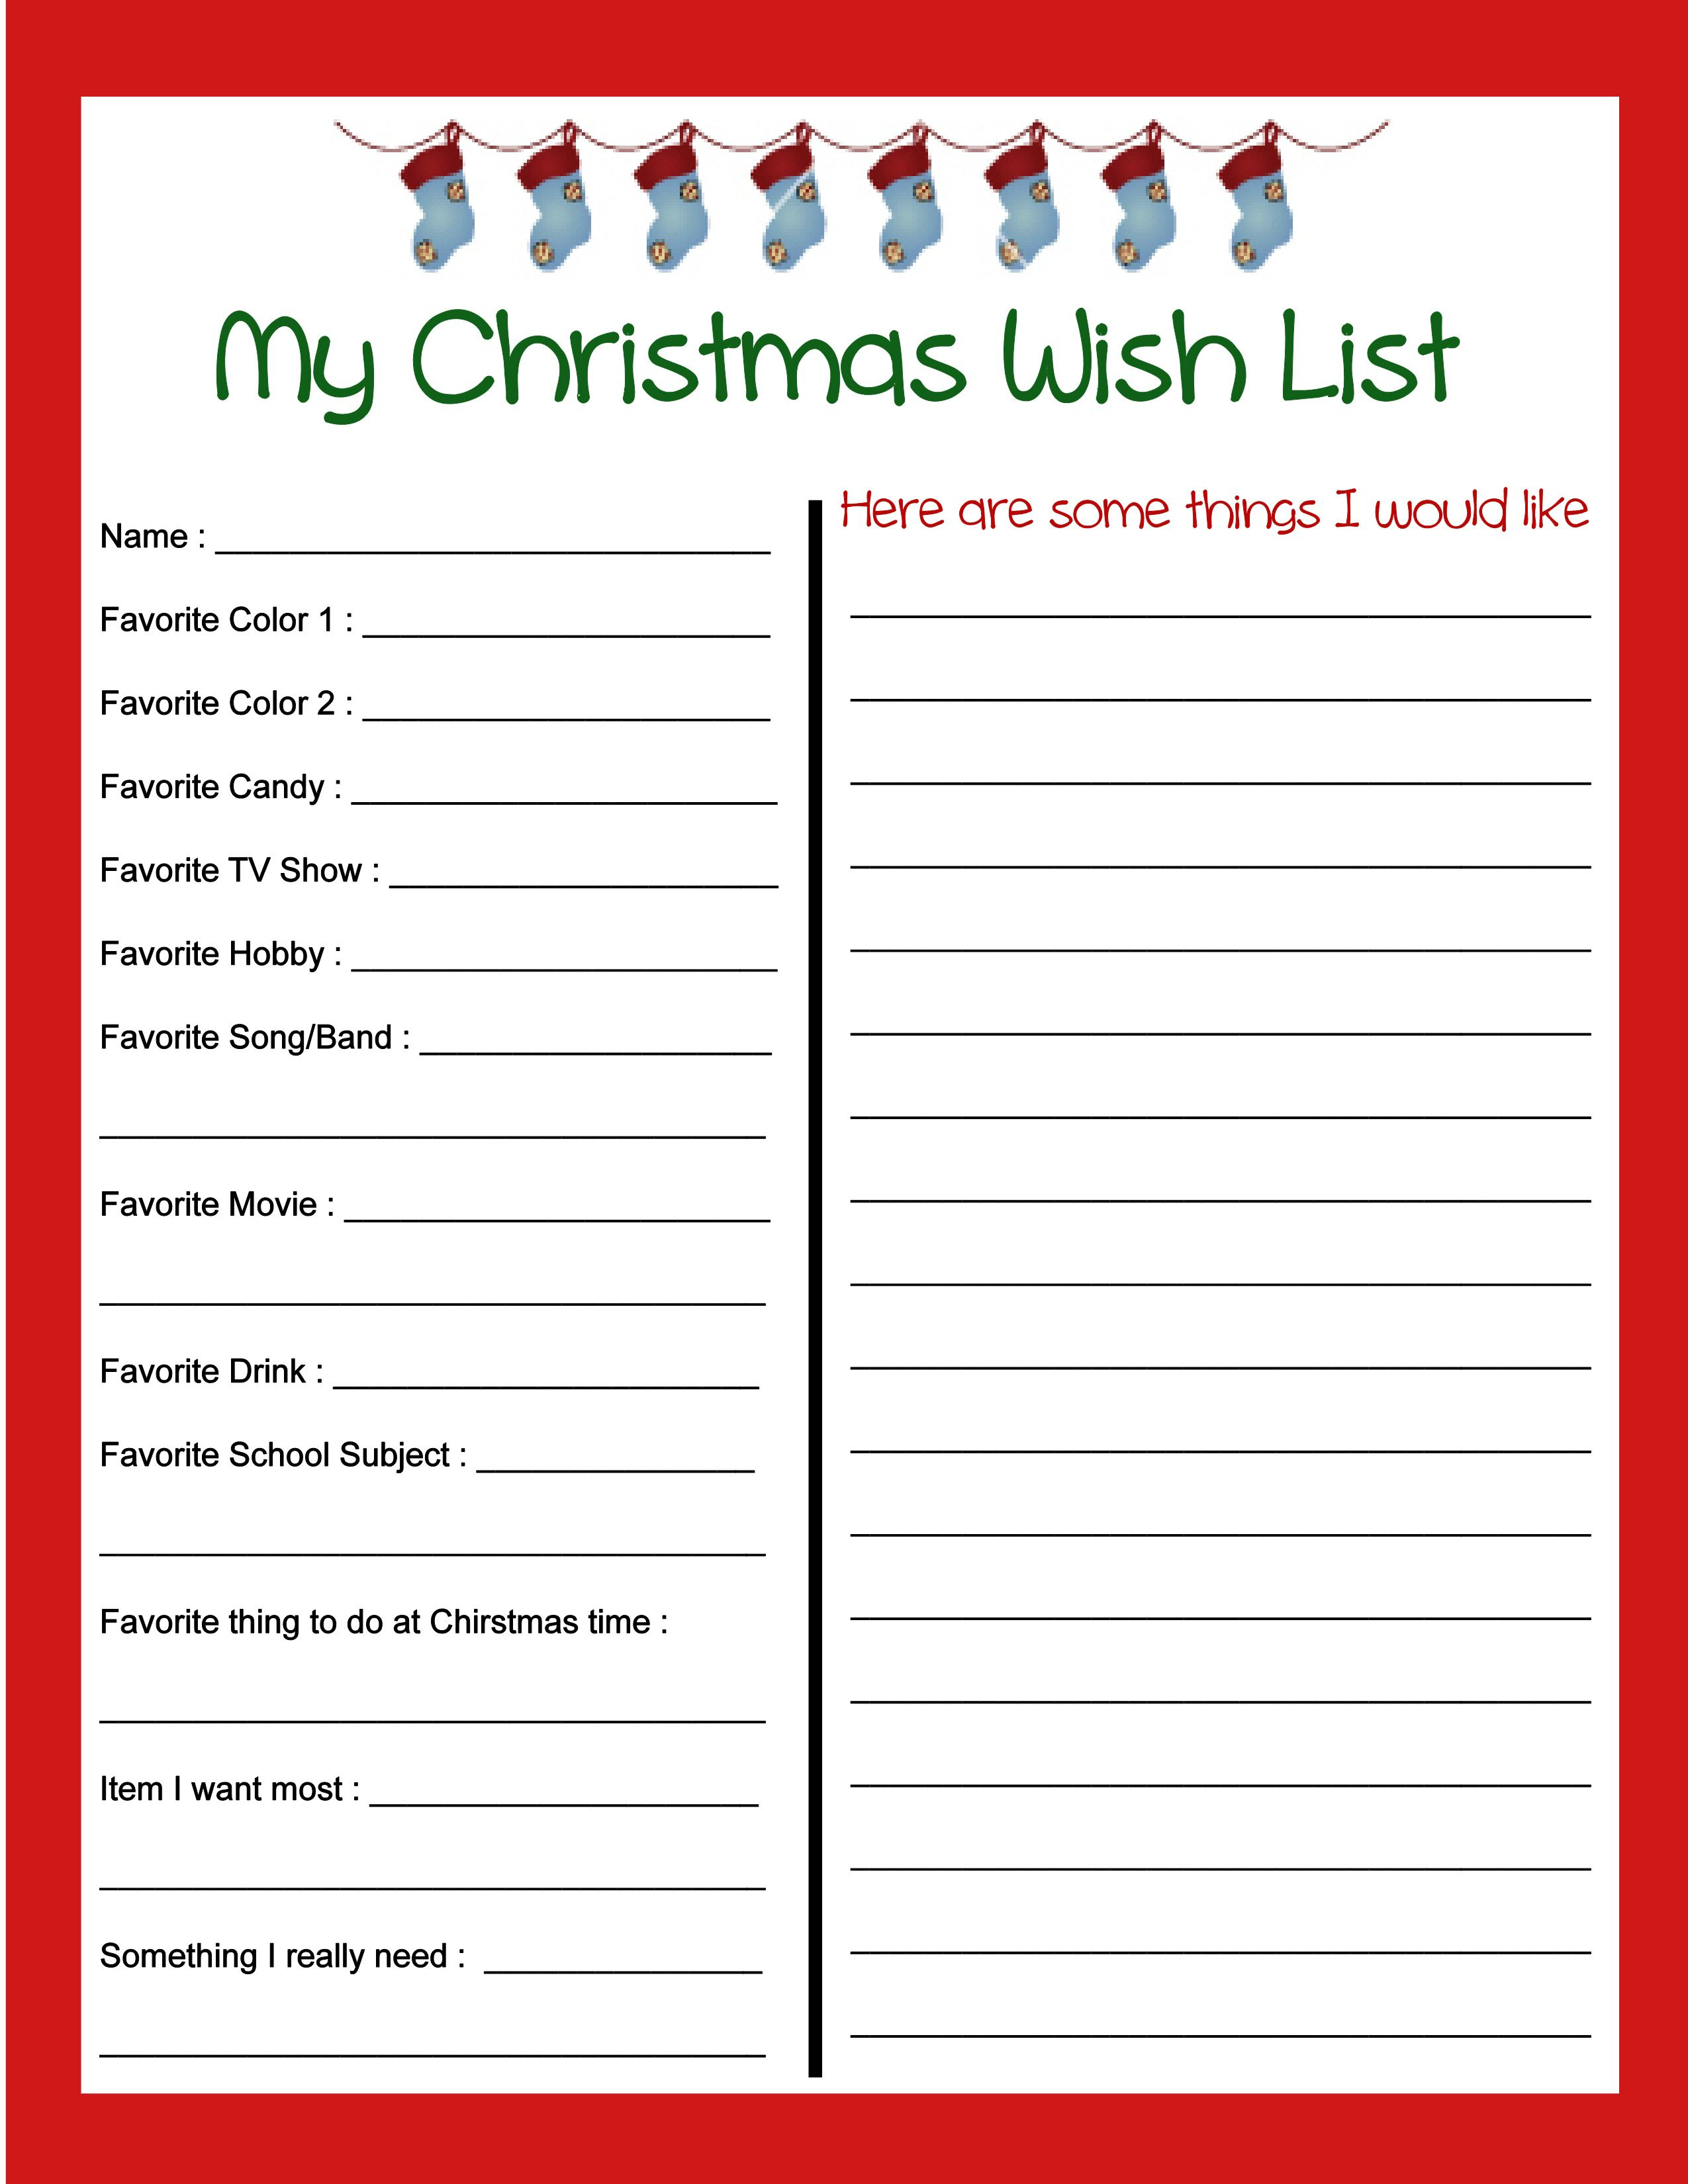 Pinbecky Stout On Christmas!!! | Pinterest | Christmas - Free Printable Christmas List Maker